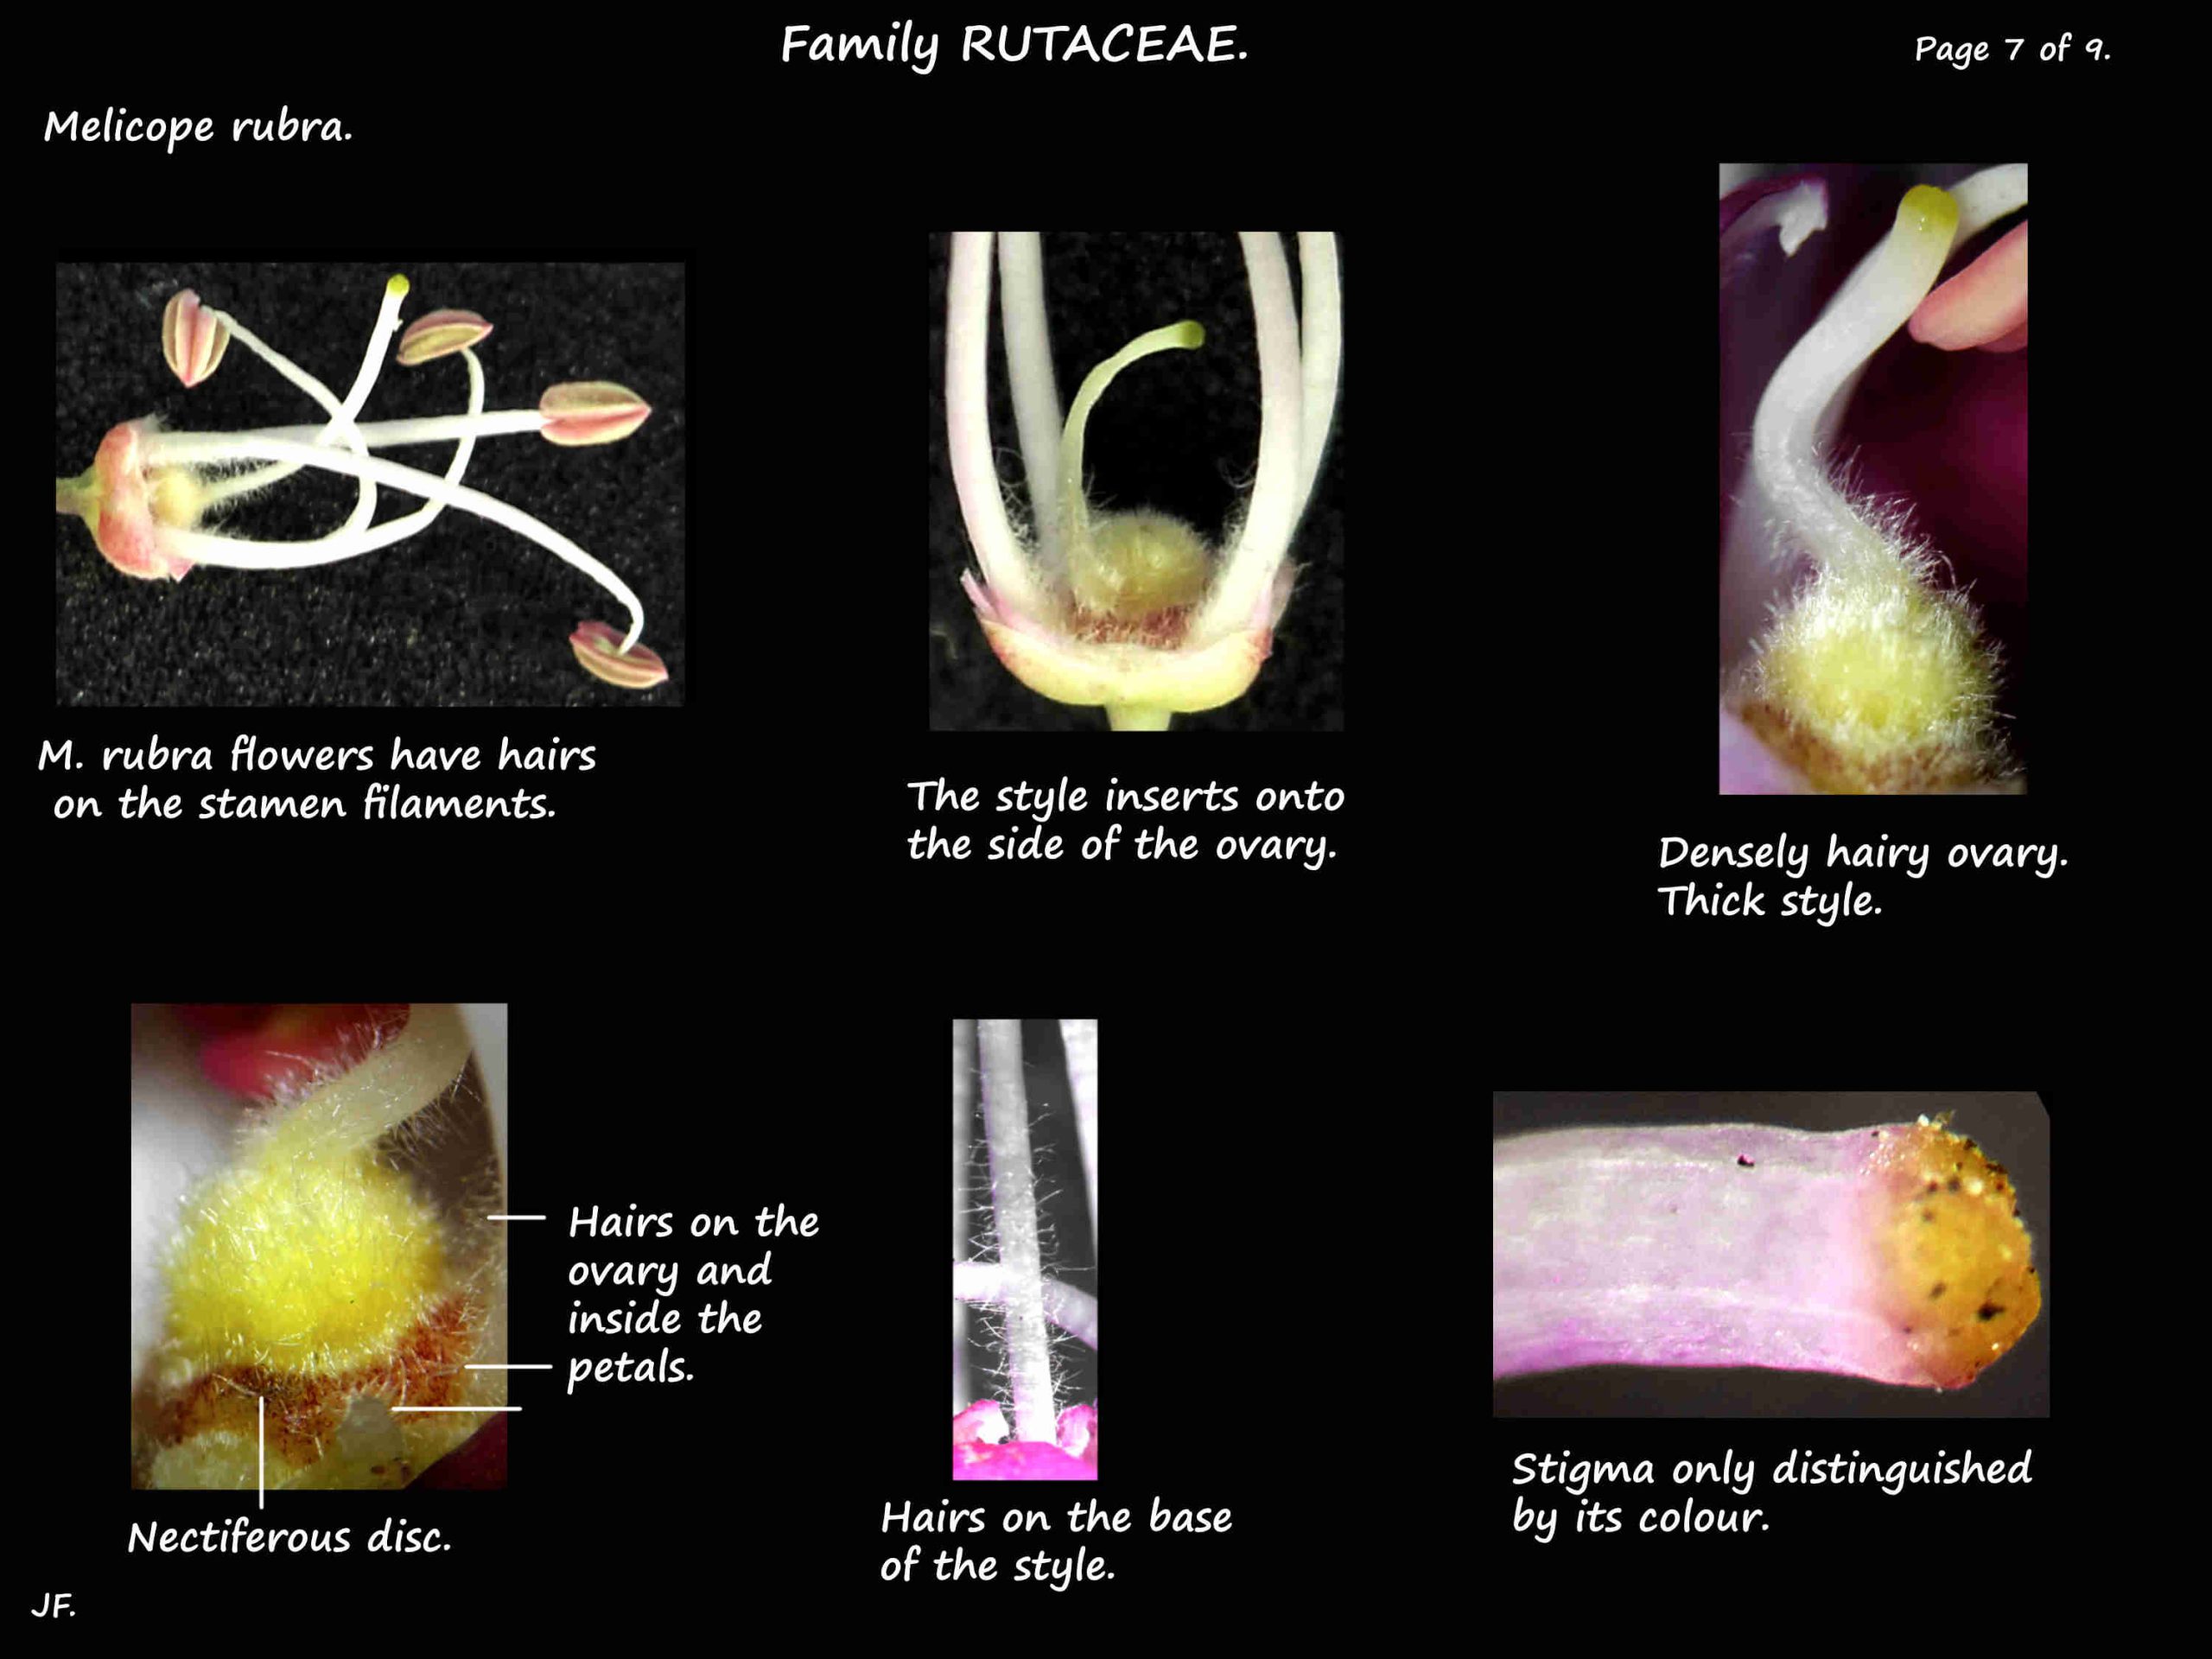 7 Melicope rubra ovary & nectary